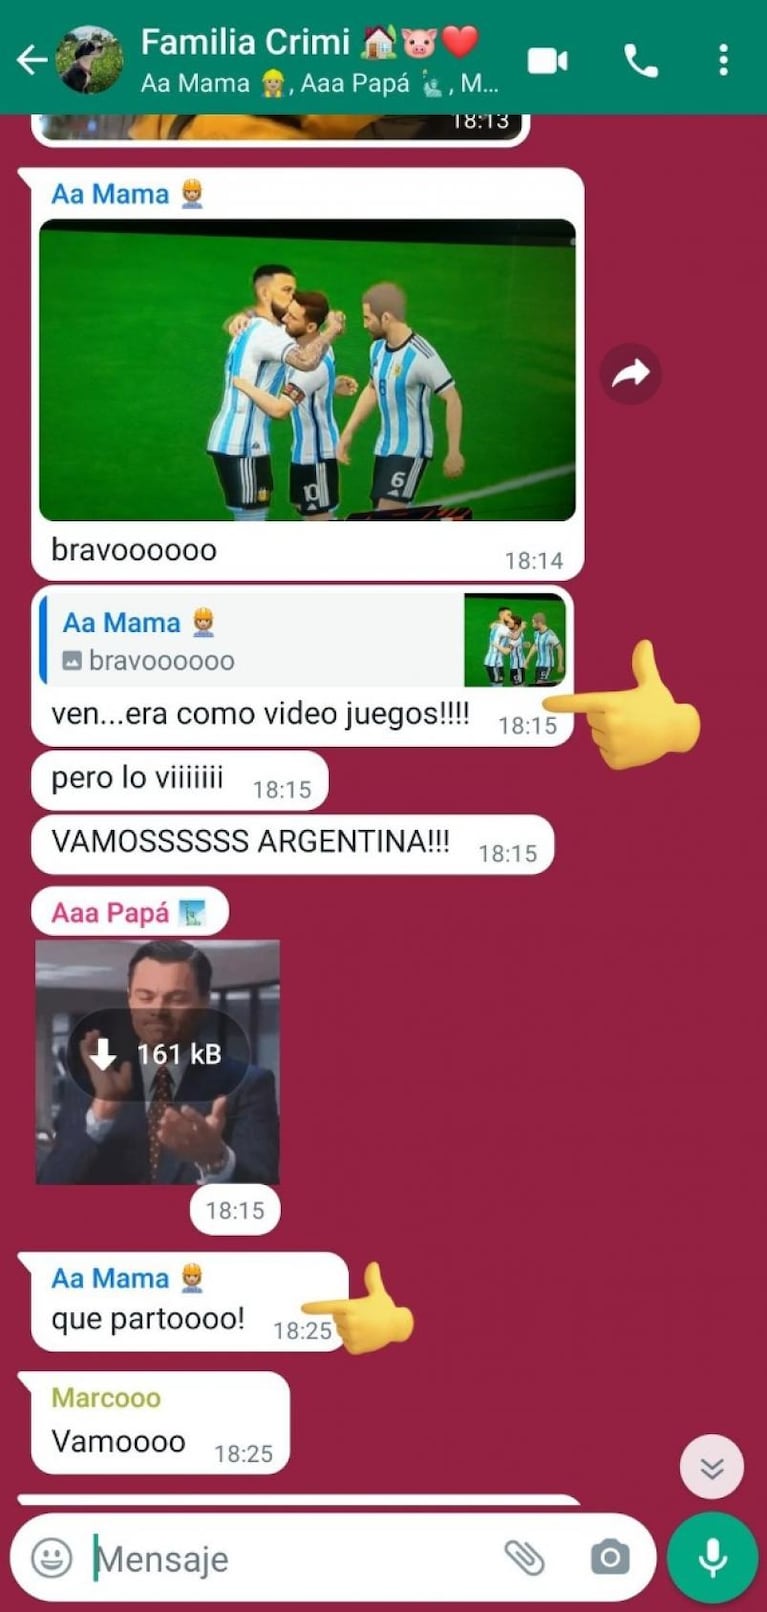 Vio el partido de Argentina por Internet y al otro día se enteró que era un videojuego